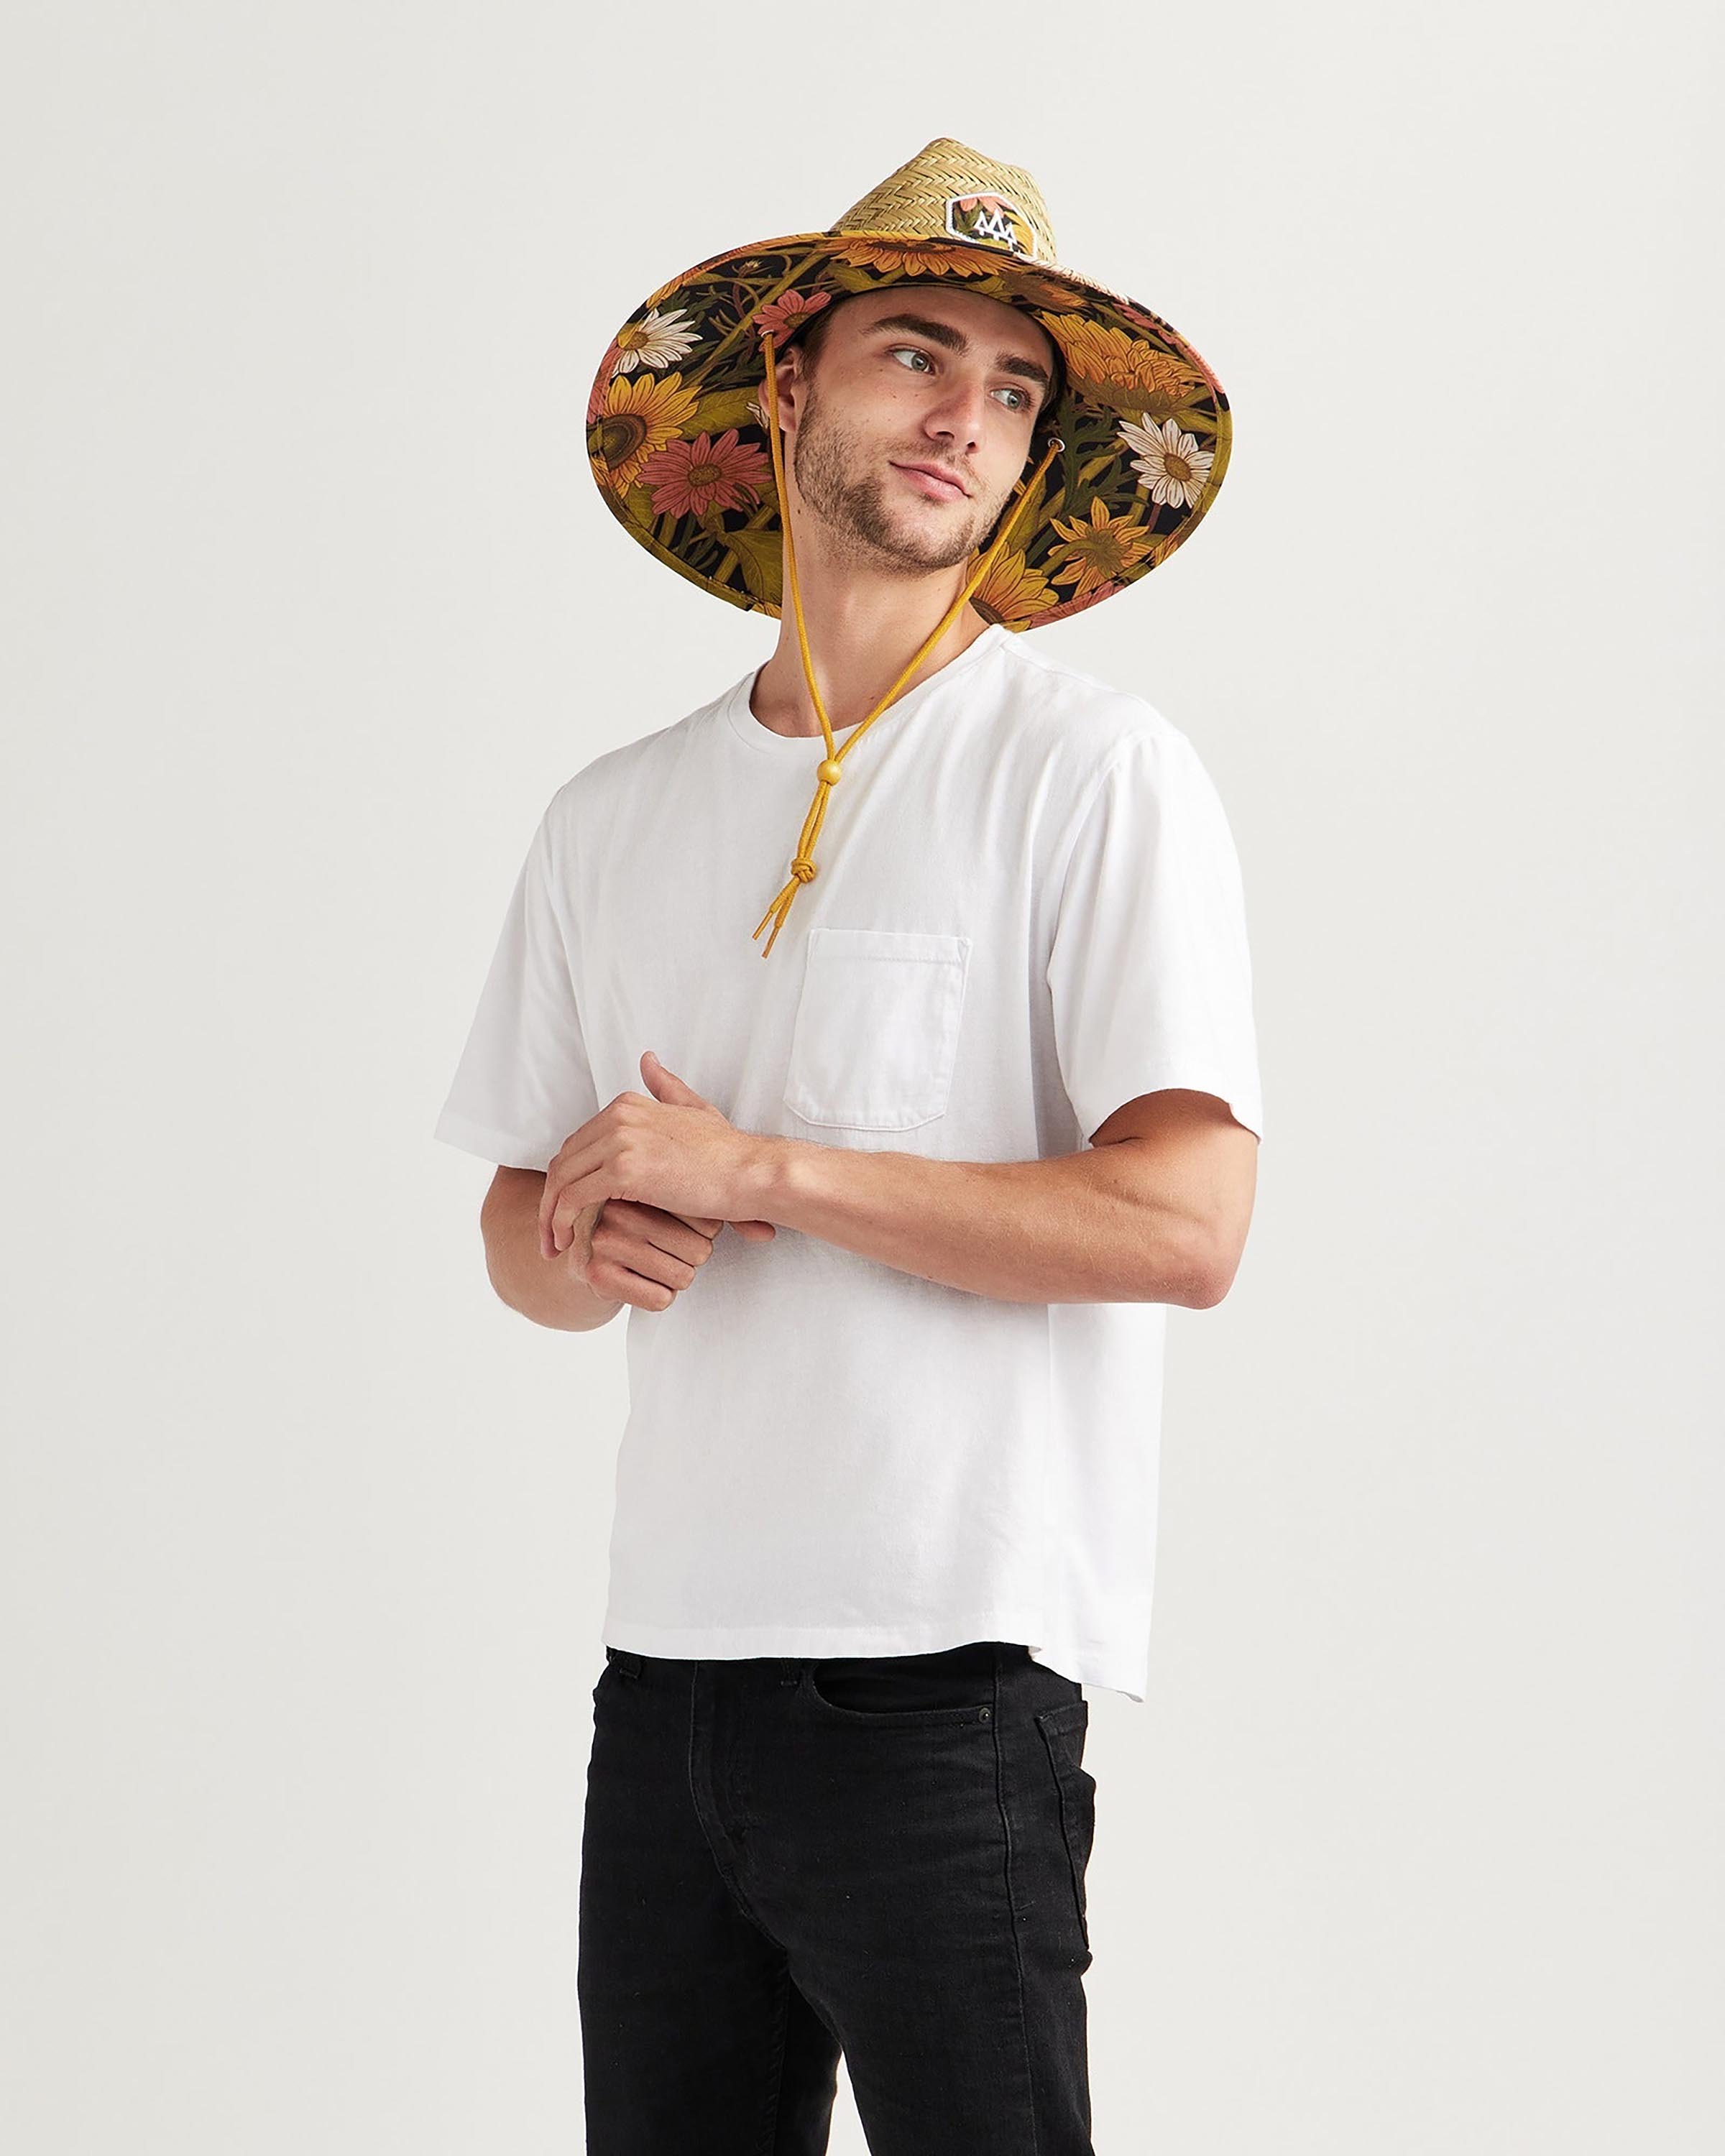 Hemlock male model looking right wearing Woodstock straw lifeguard hat with sunflower pattern